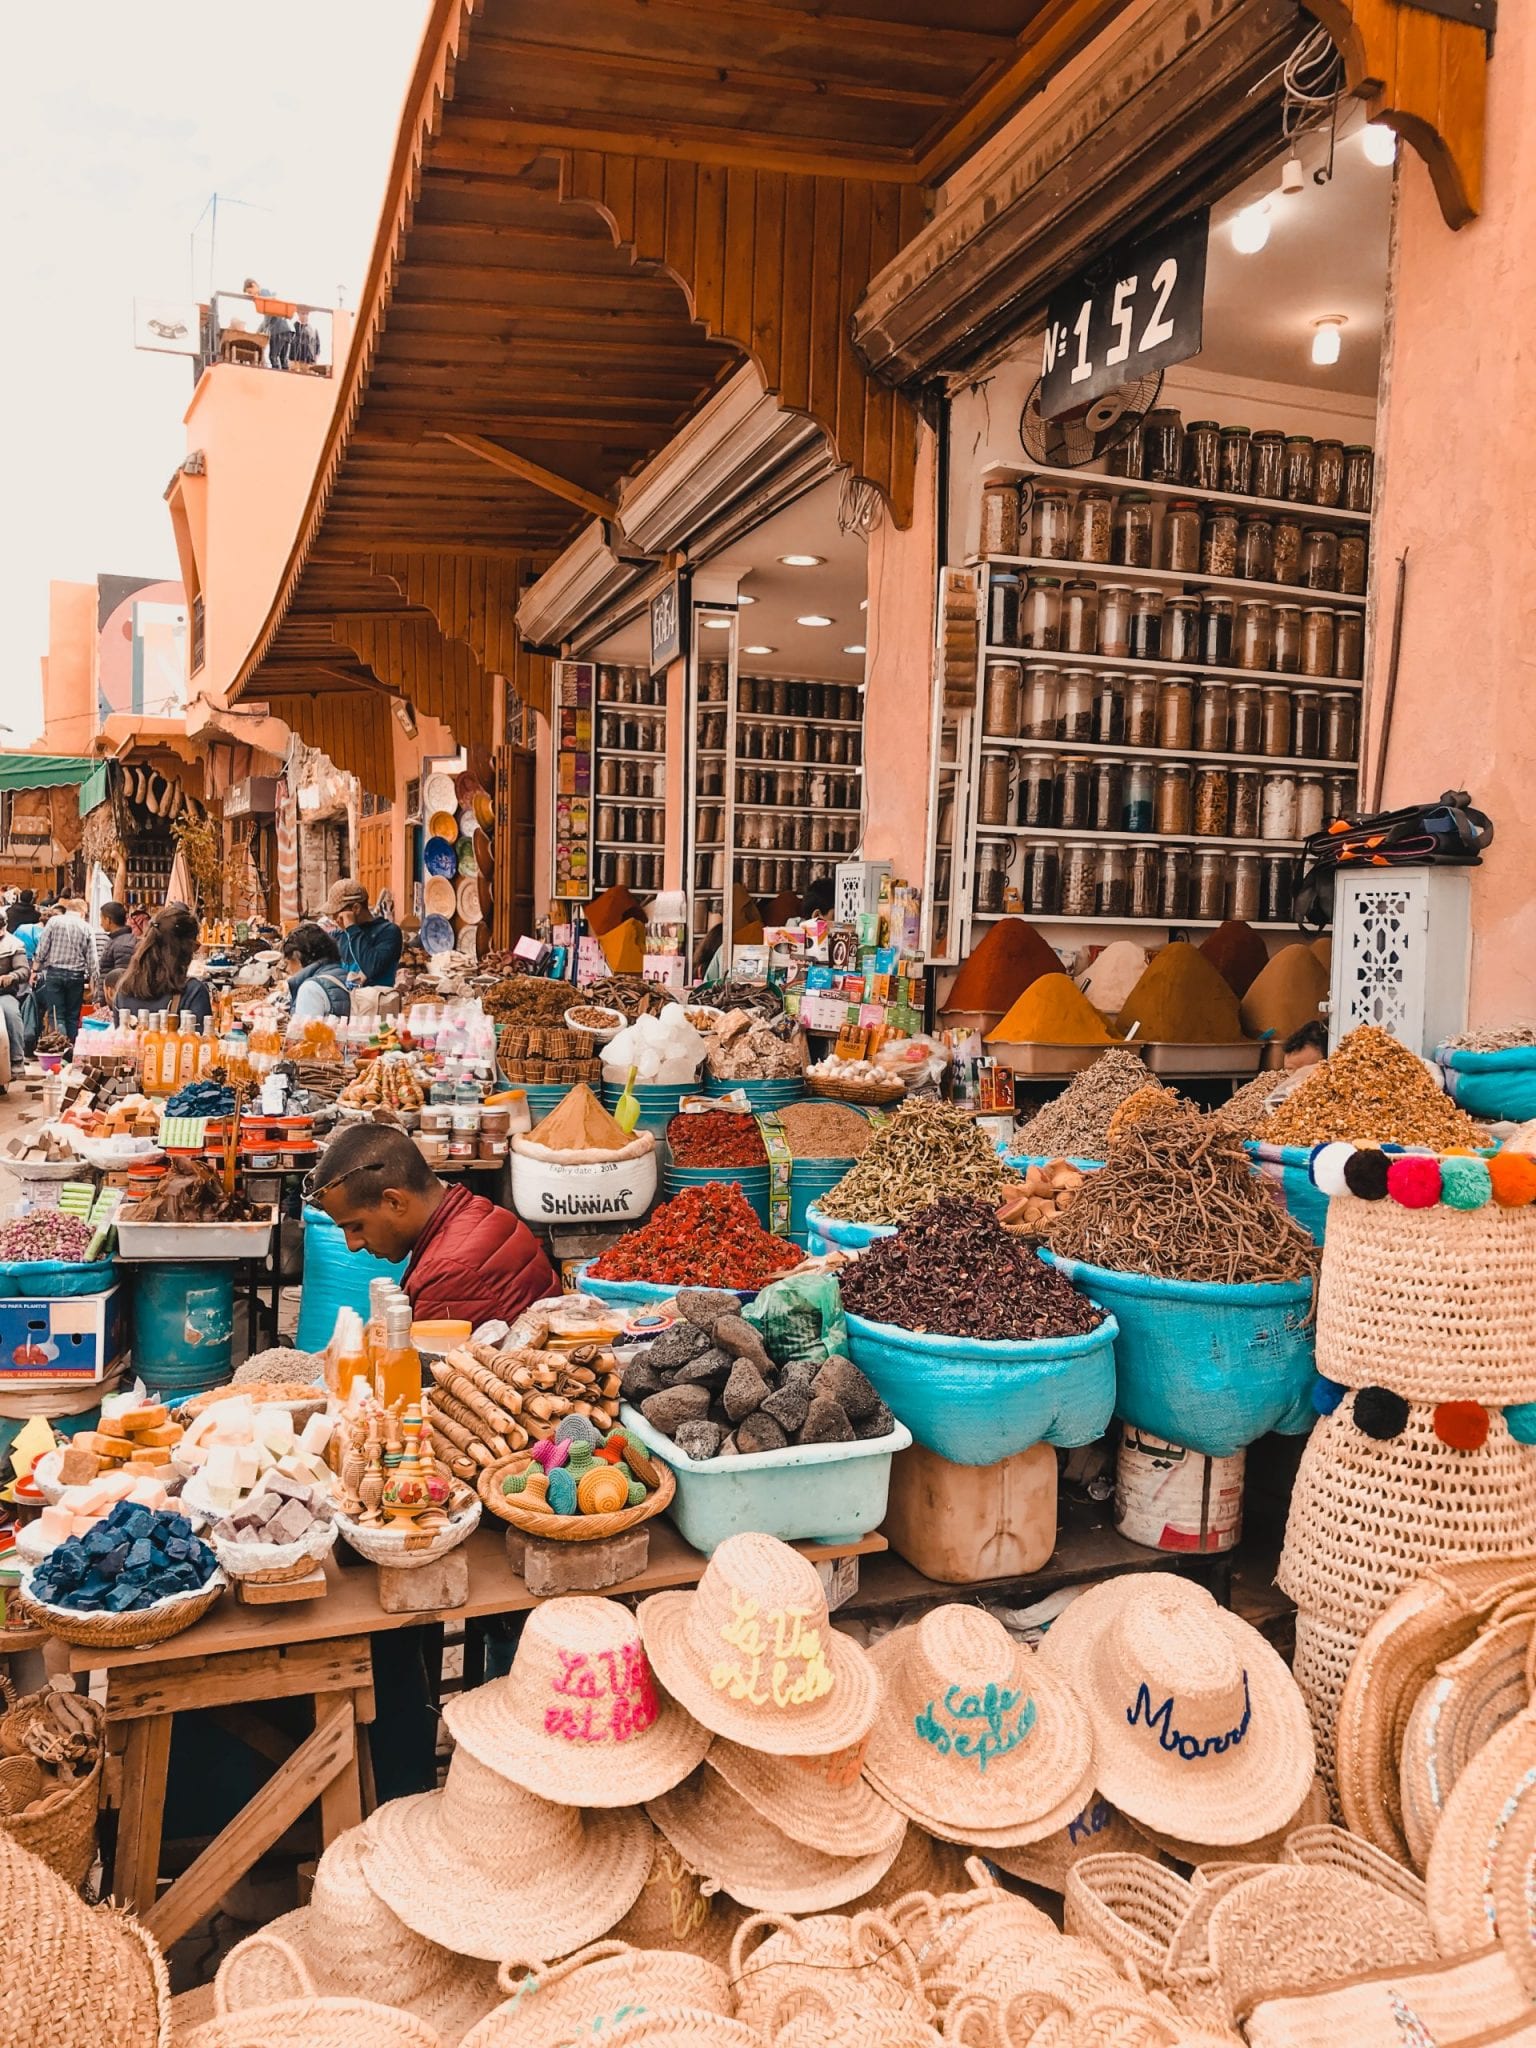 Vibrant spice shop in a market square Marrakech Morocco